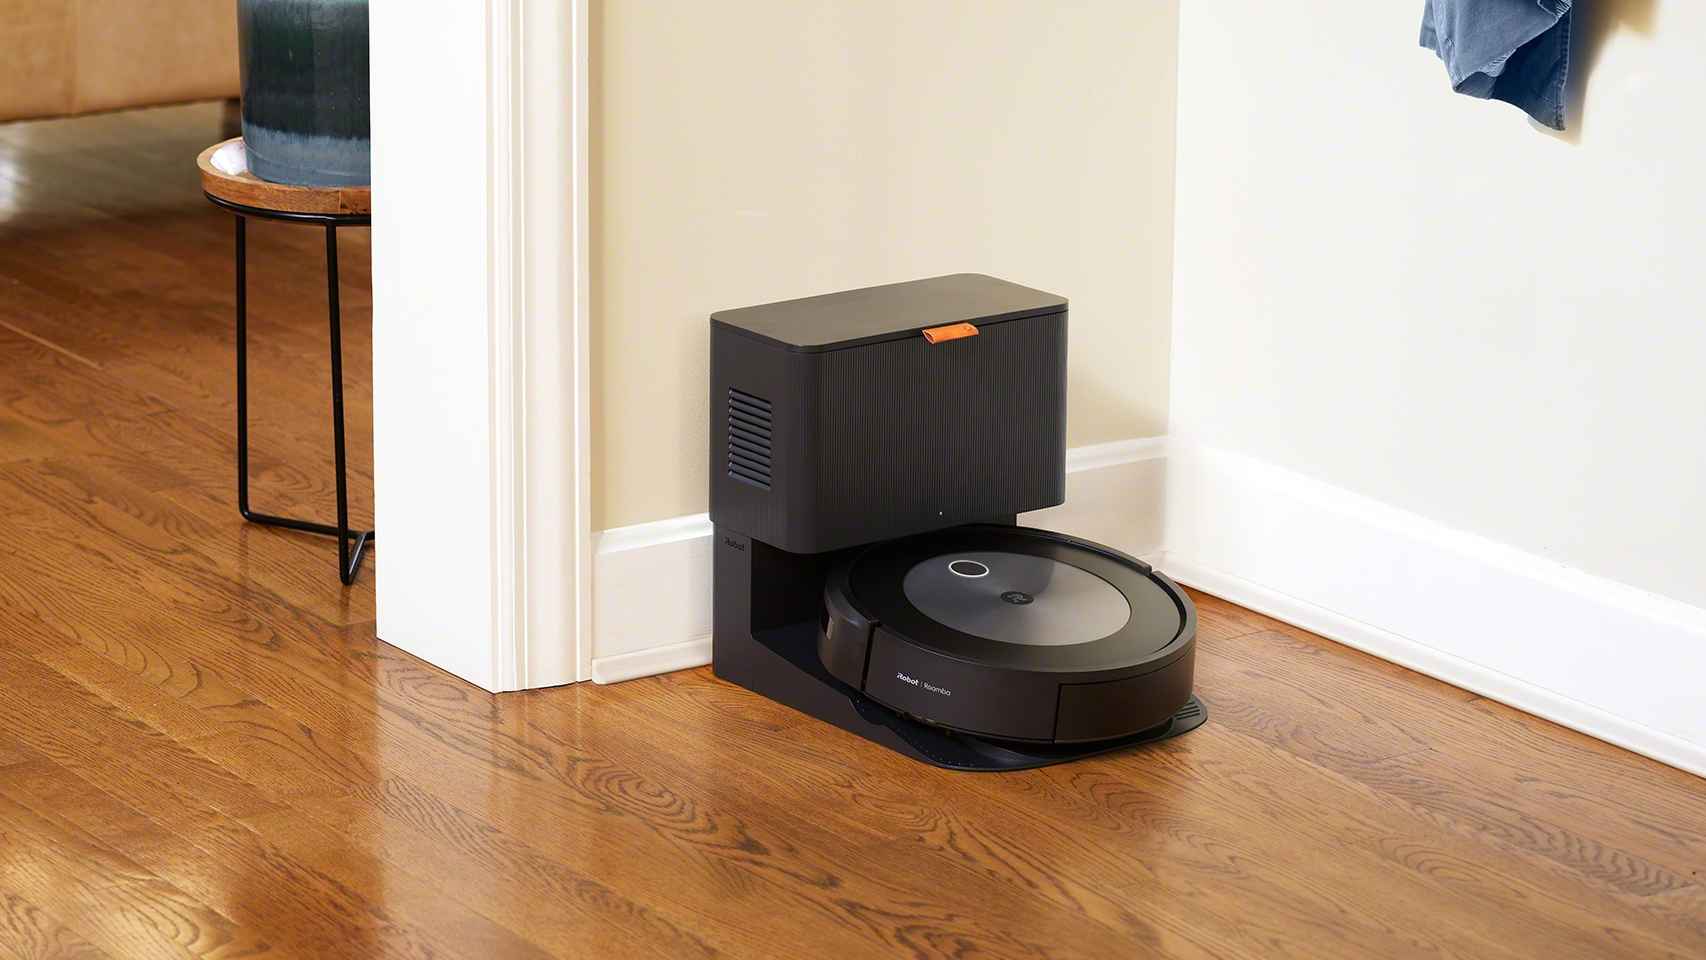 Pásate a la limpieza eficiente con este robot aspirador Roomba ¡que ahora  está rebajado más de 600 euros! - Telecinco